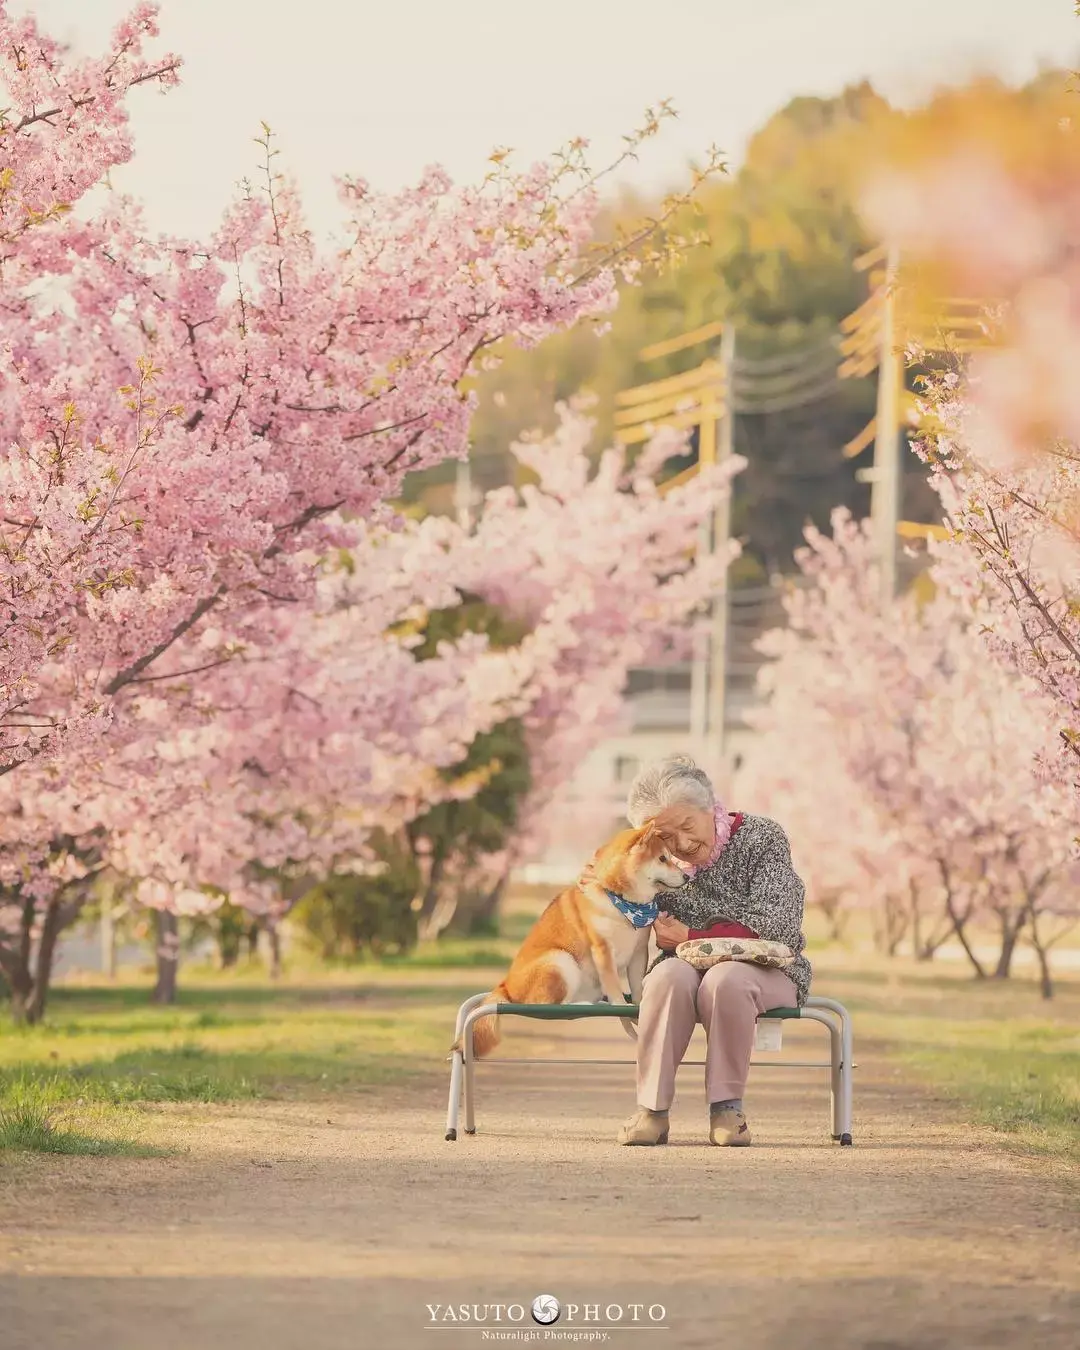 两个老人拍樱花的图片图片